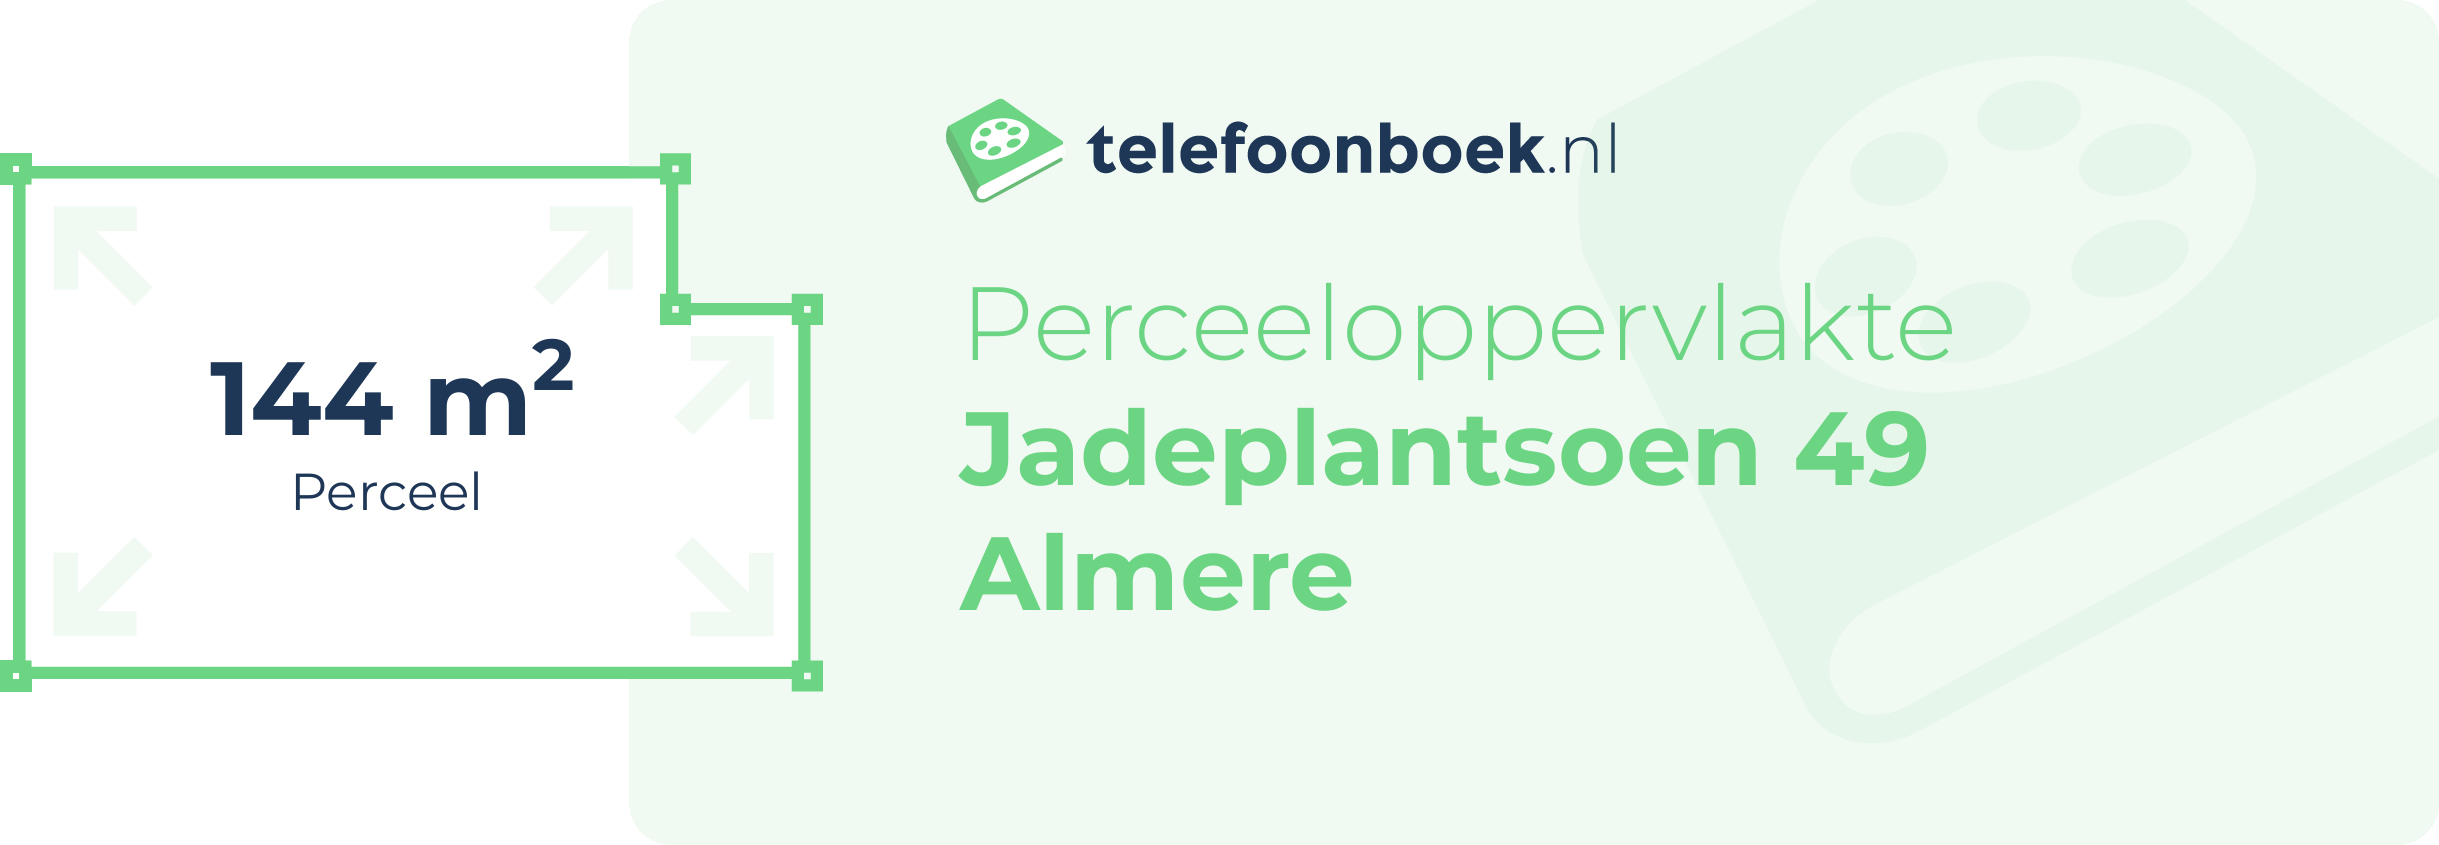 Perceeloppervlakte Jadeplantsoen 49 Almere